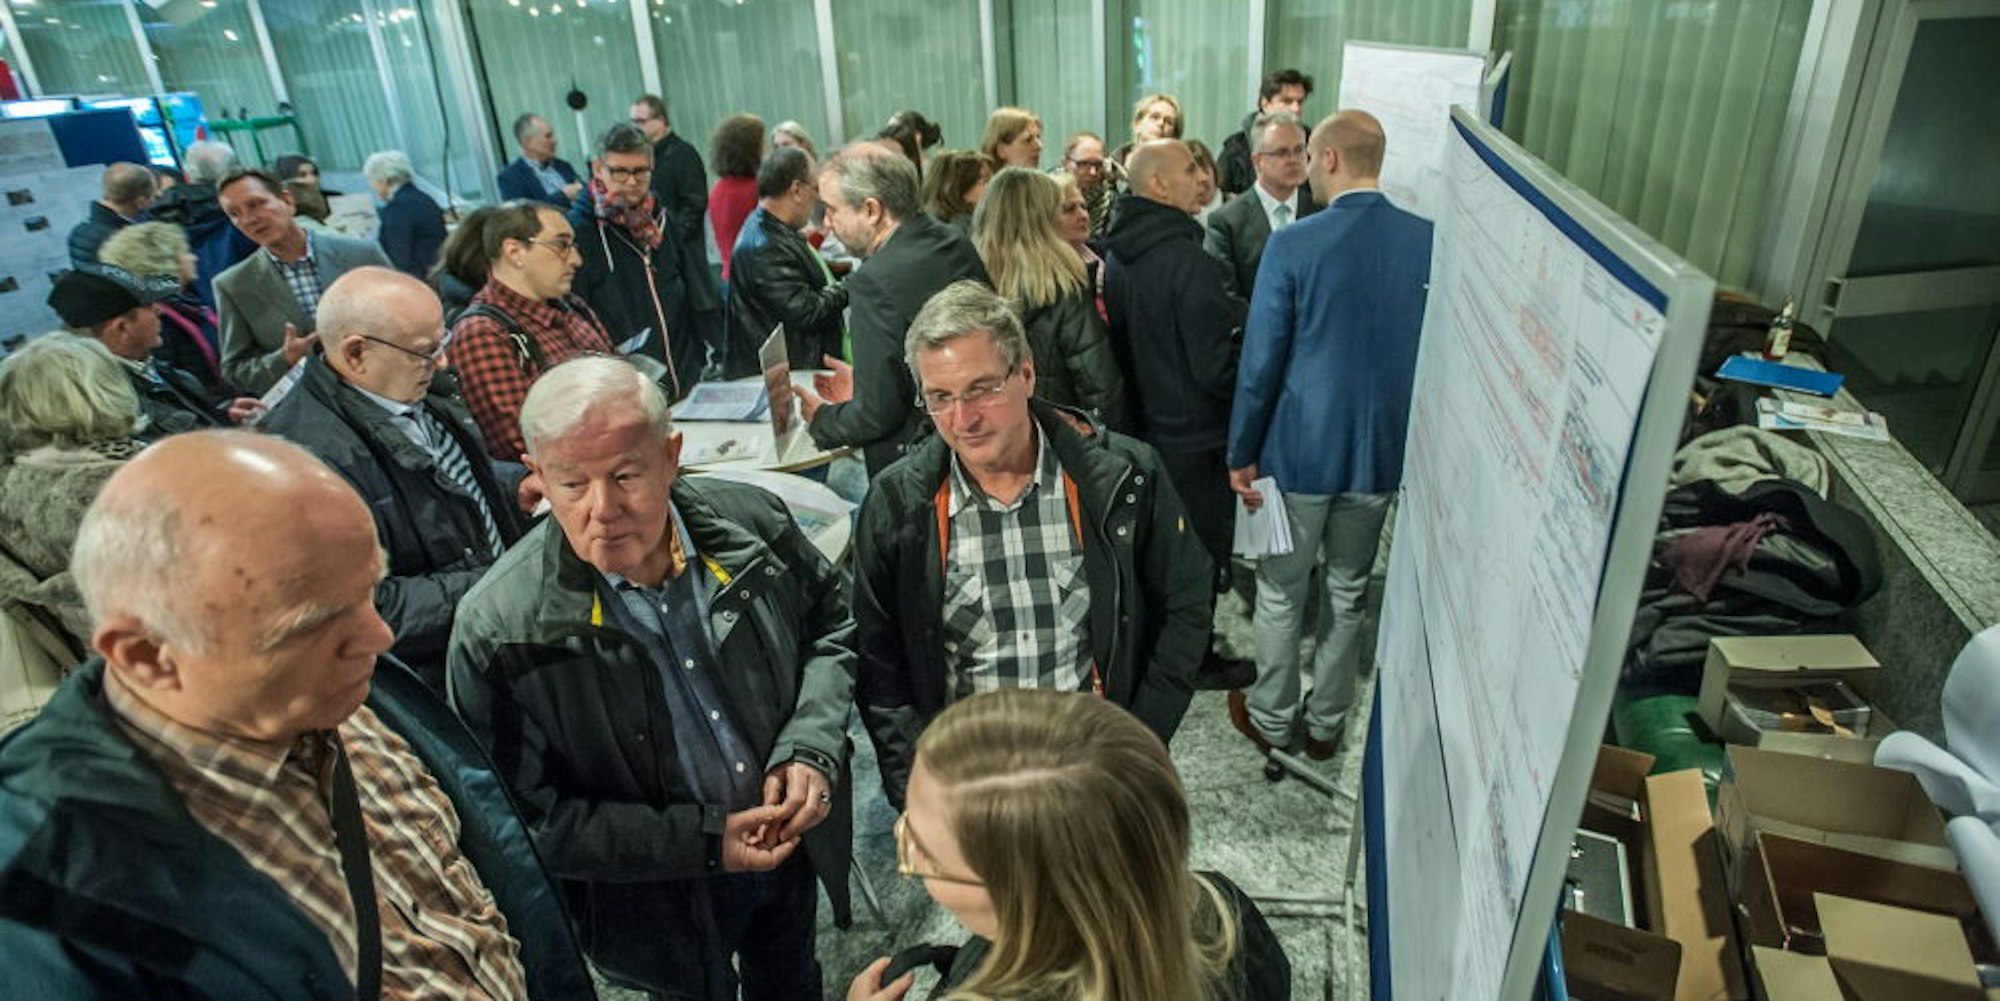 Sicher über 100 Leverkusener kamen ins Forum, um sich über das RRX-Gleisbauprojekt der Bahn zu informieren. Für die S-Bahn-Pendler unter ihnen gab es unangenehme Neuigkeiten.